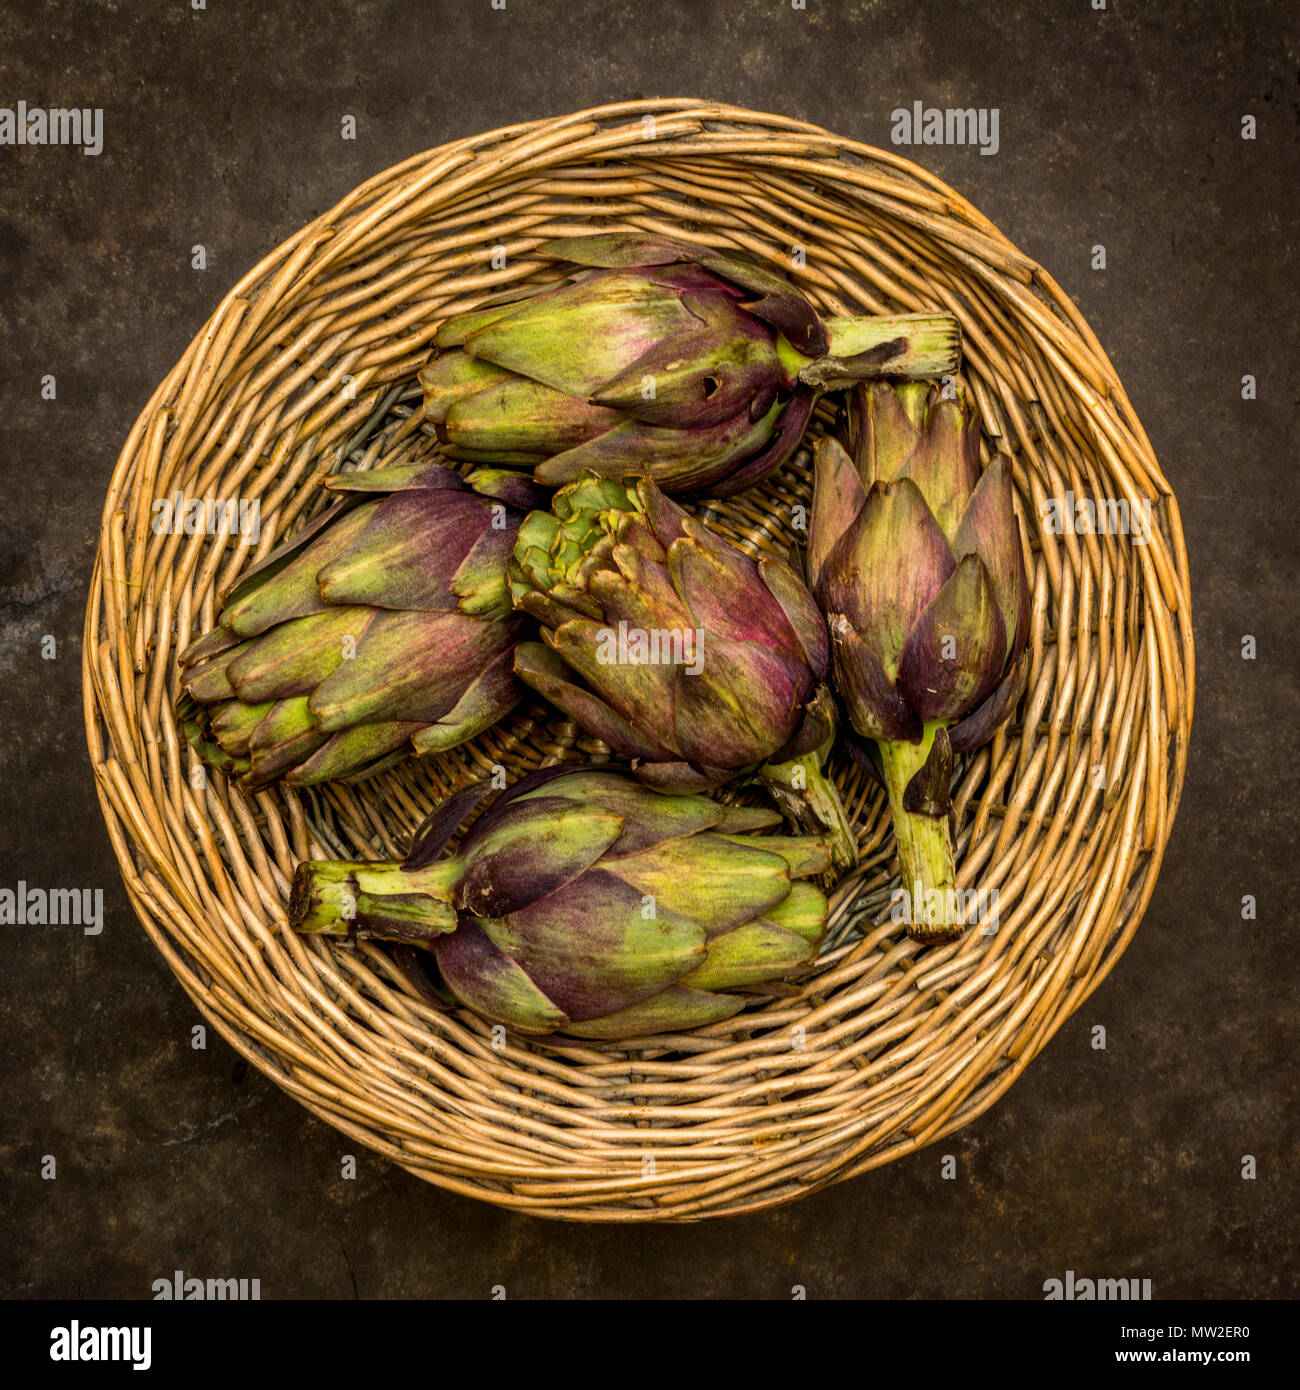 Artichokes in a wicker basket. Stock Photo